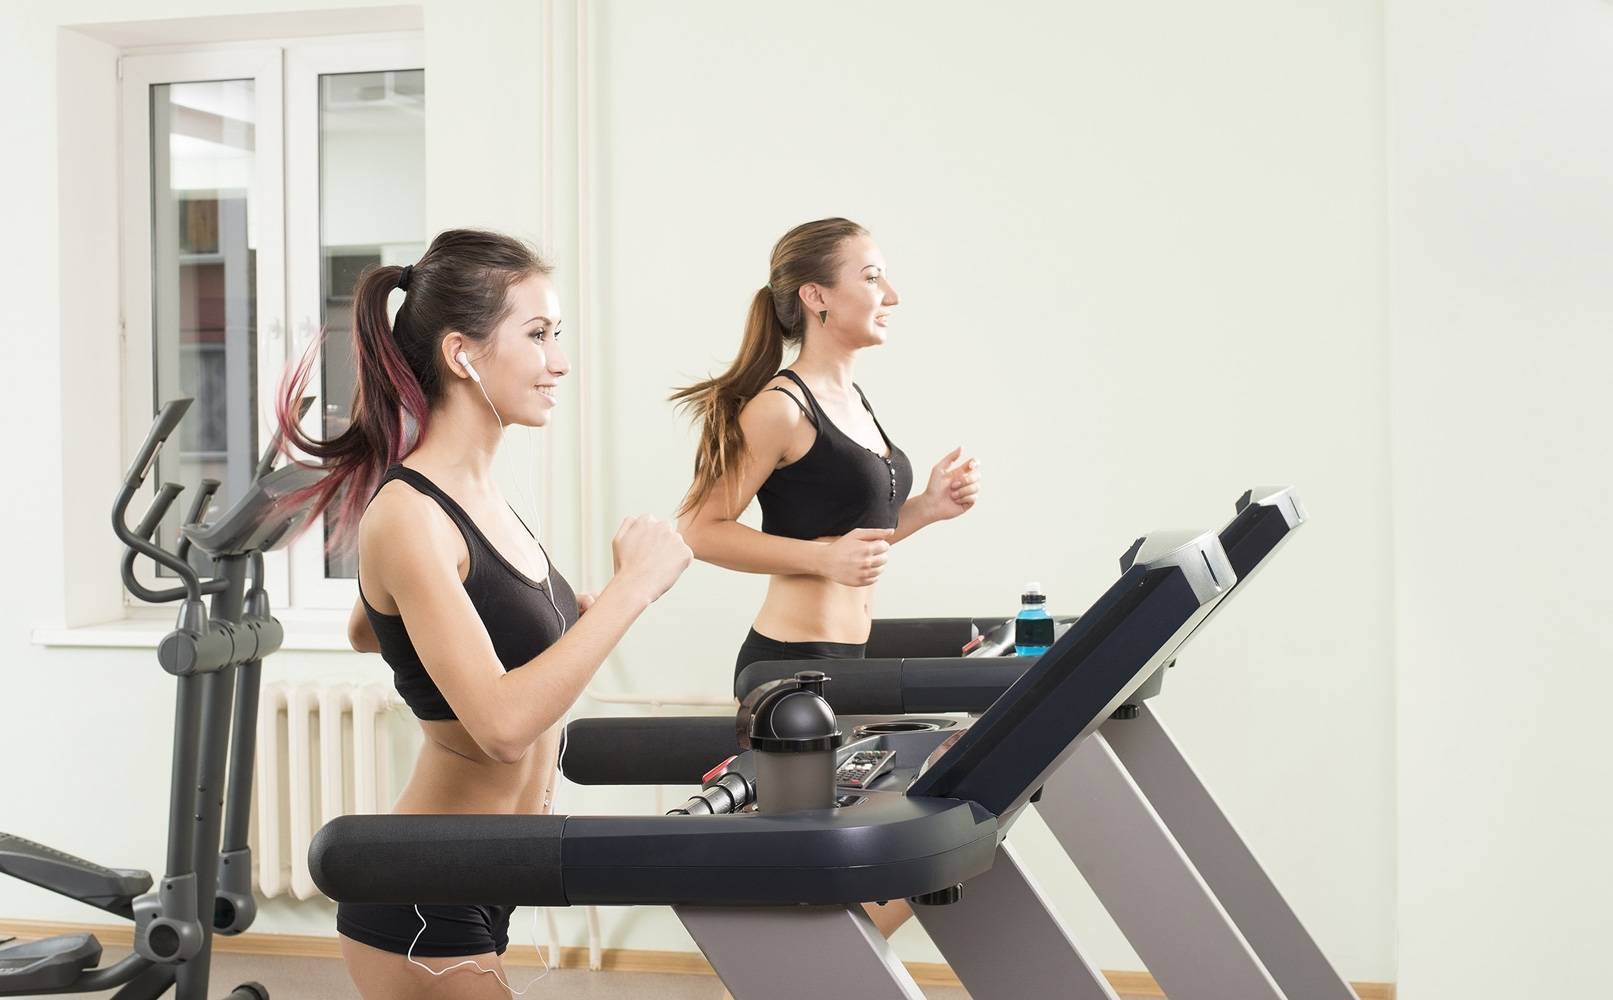 Тренировки для похудения | фитнес | онлайн-журнал #яworldclass